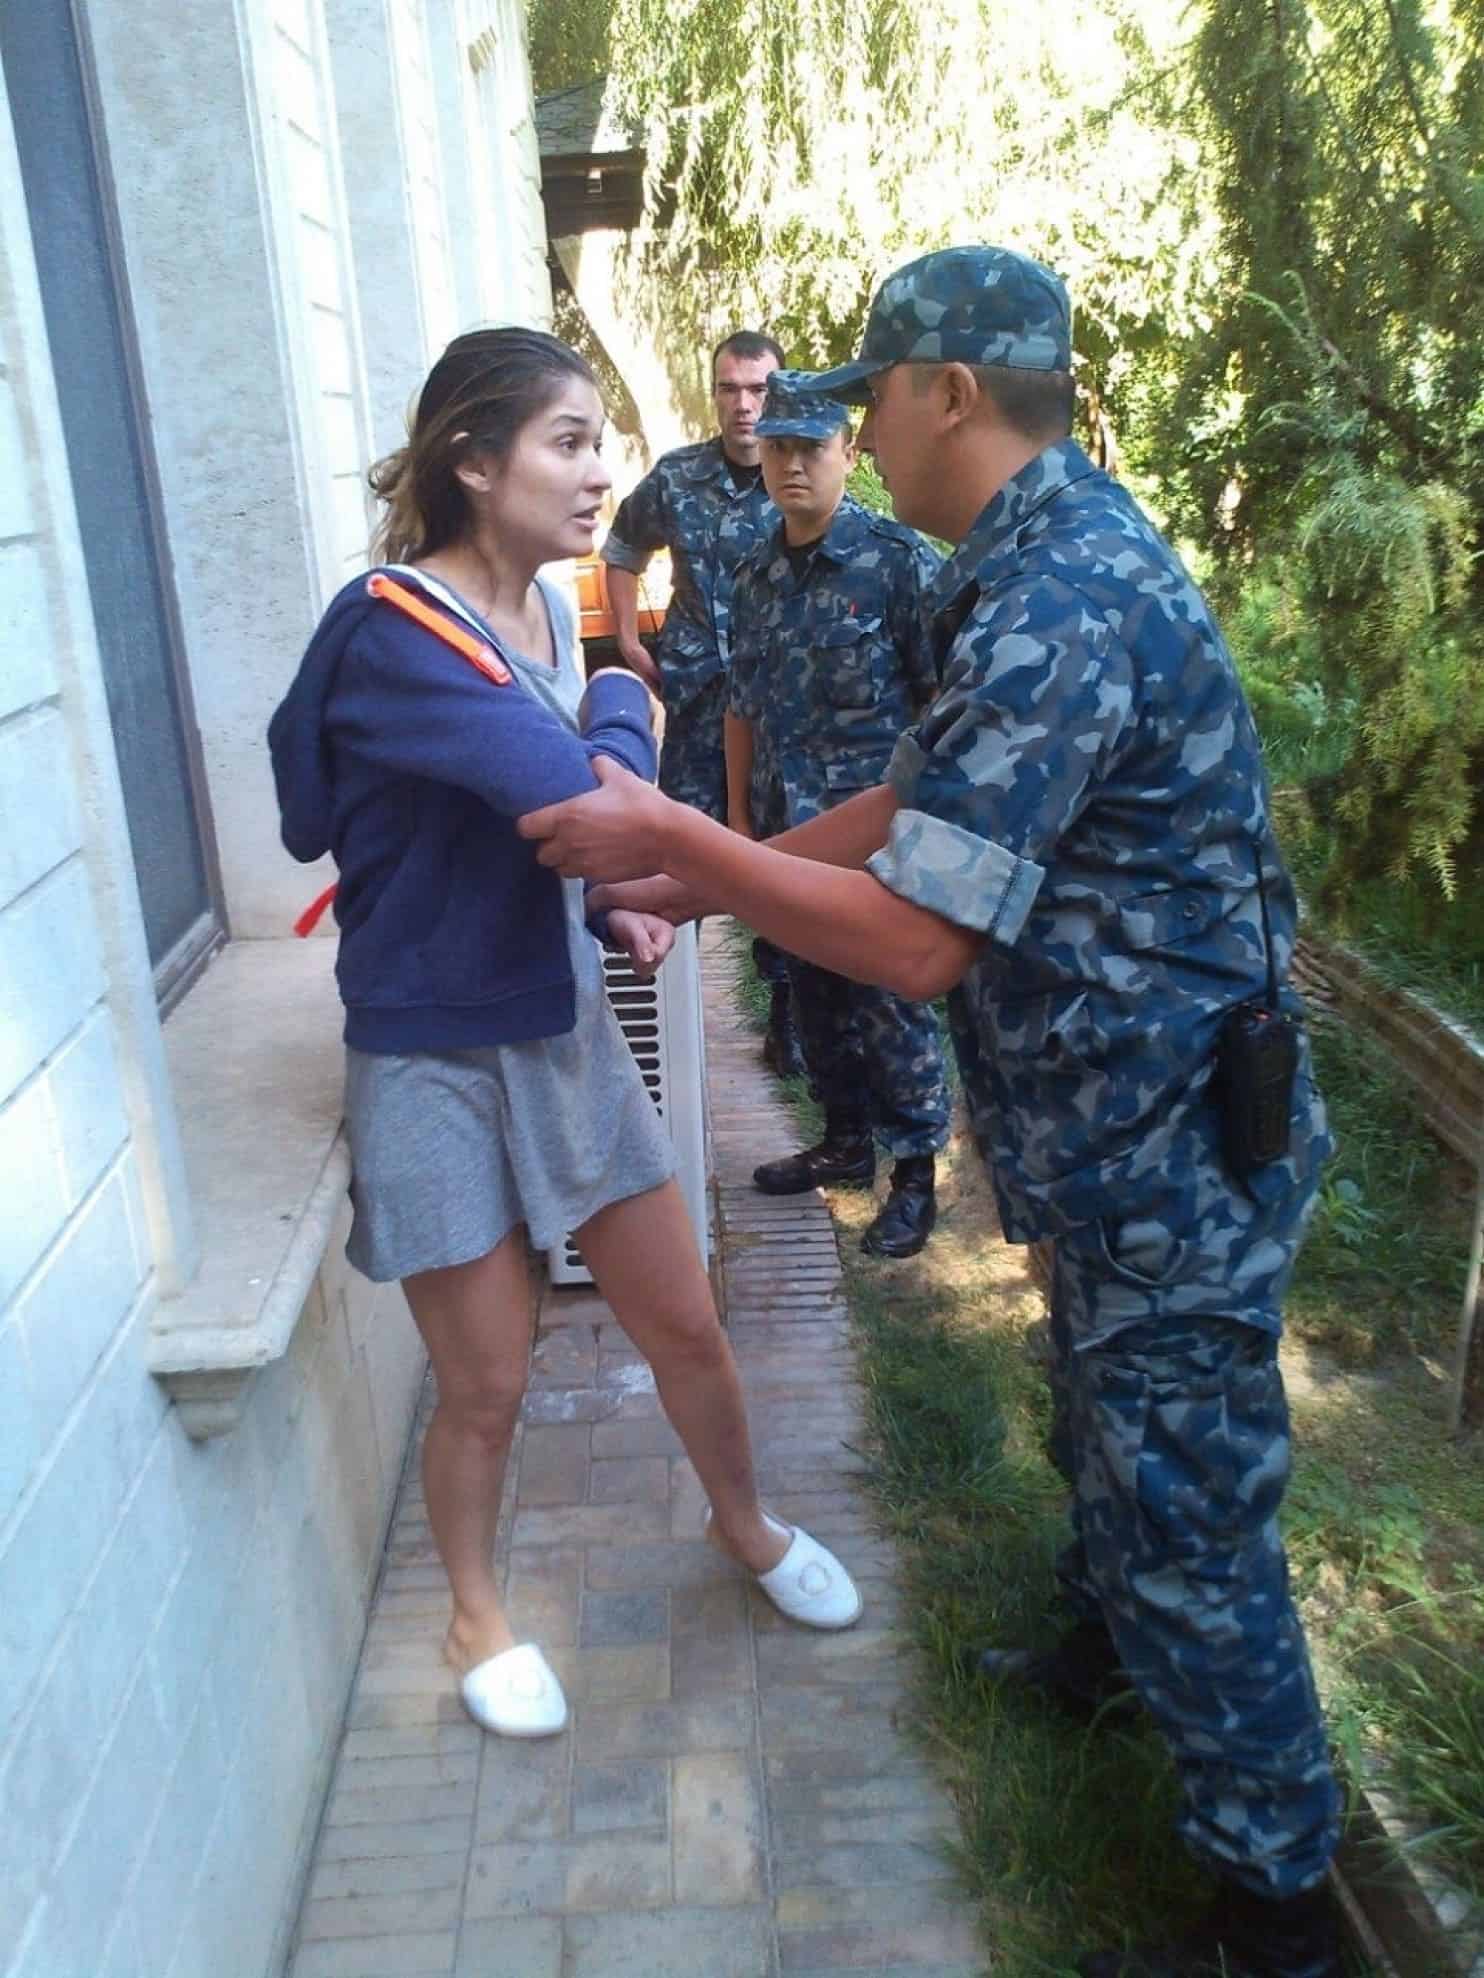 ¡Escándalo! Se desconoce el paradero de la glamurosa hija del ex dictador de Uzbekistán ¿Fue envenenada? ¿Está secuestrada? ¡Nadie sabe!